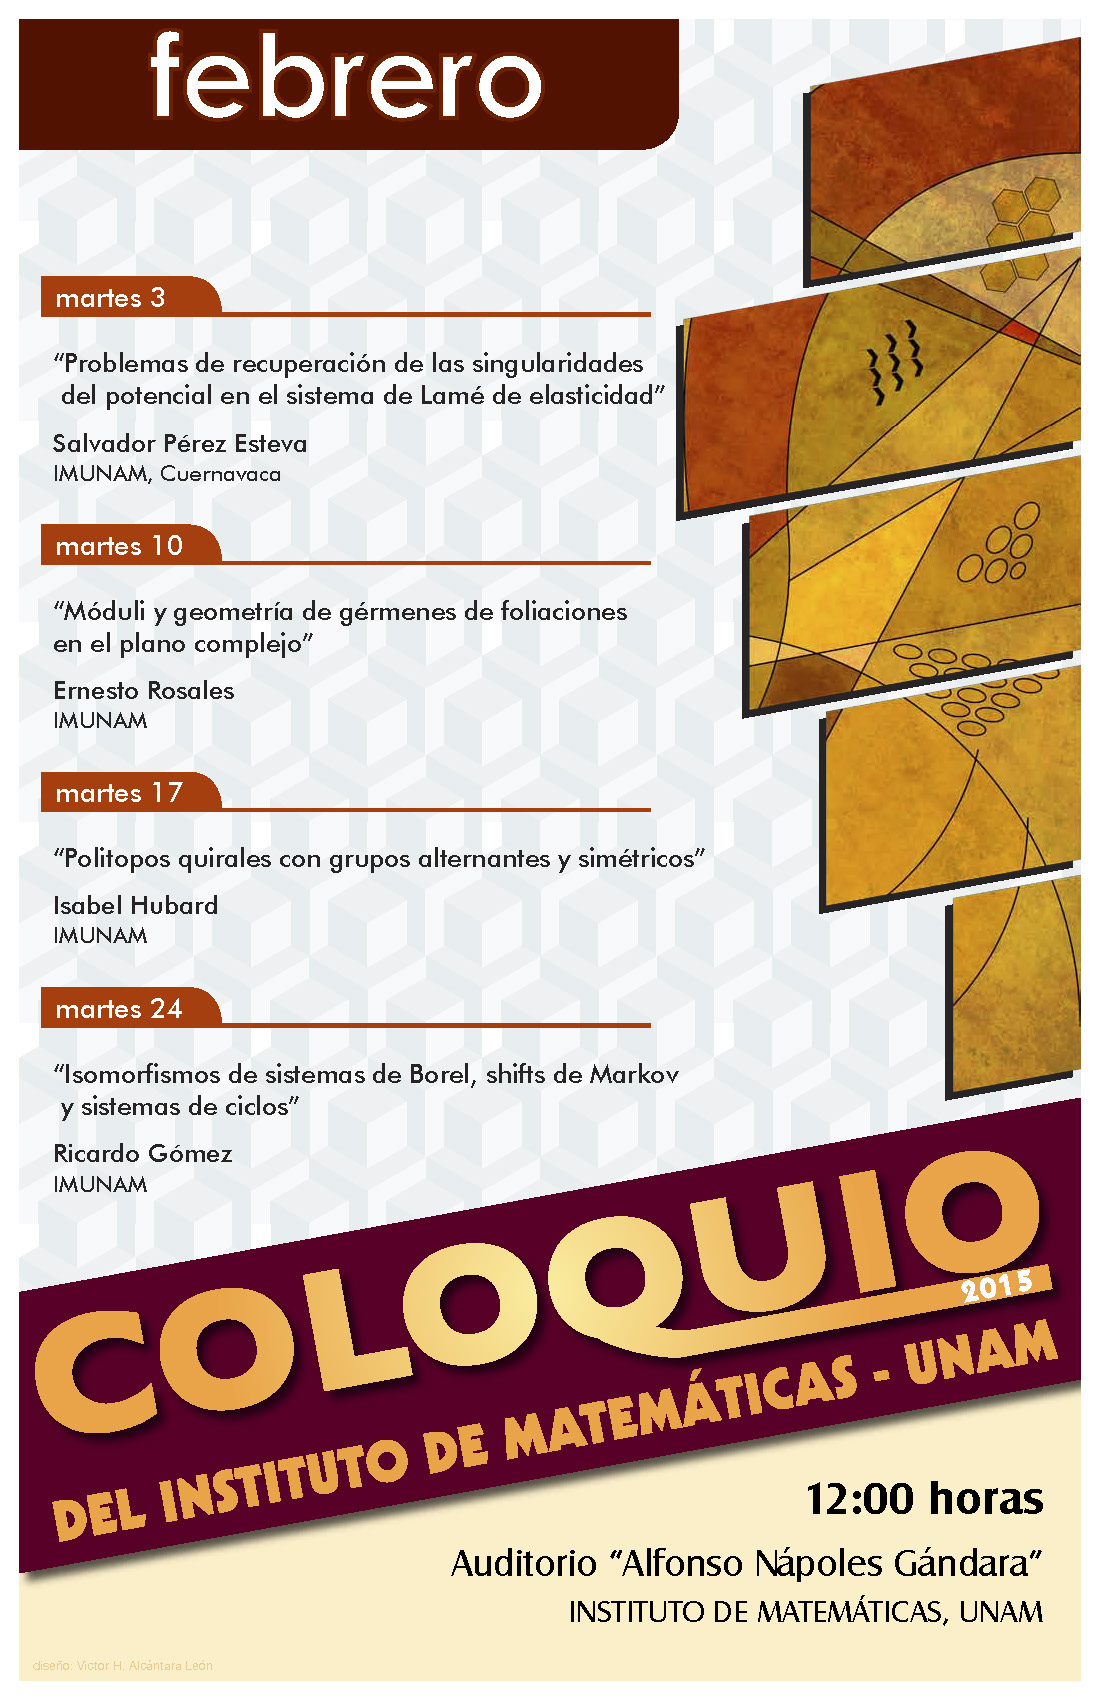 Febrero: Sesiones para Coloquio